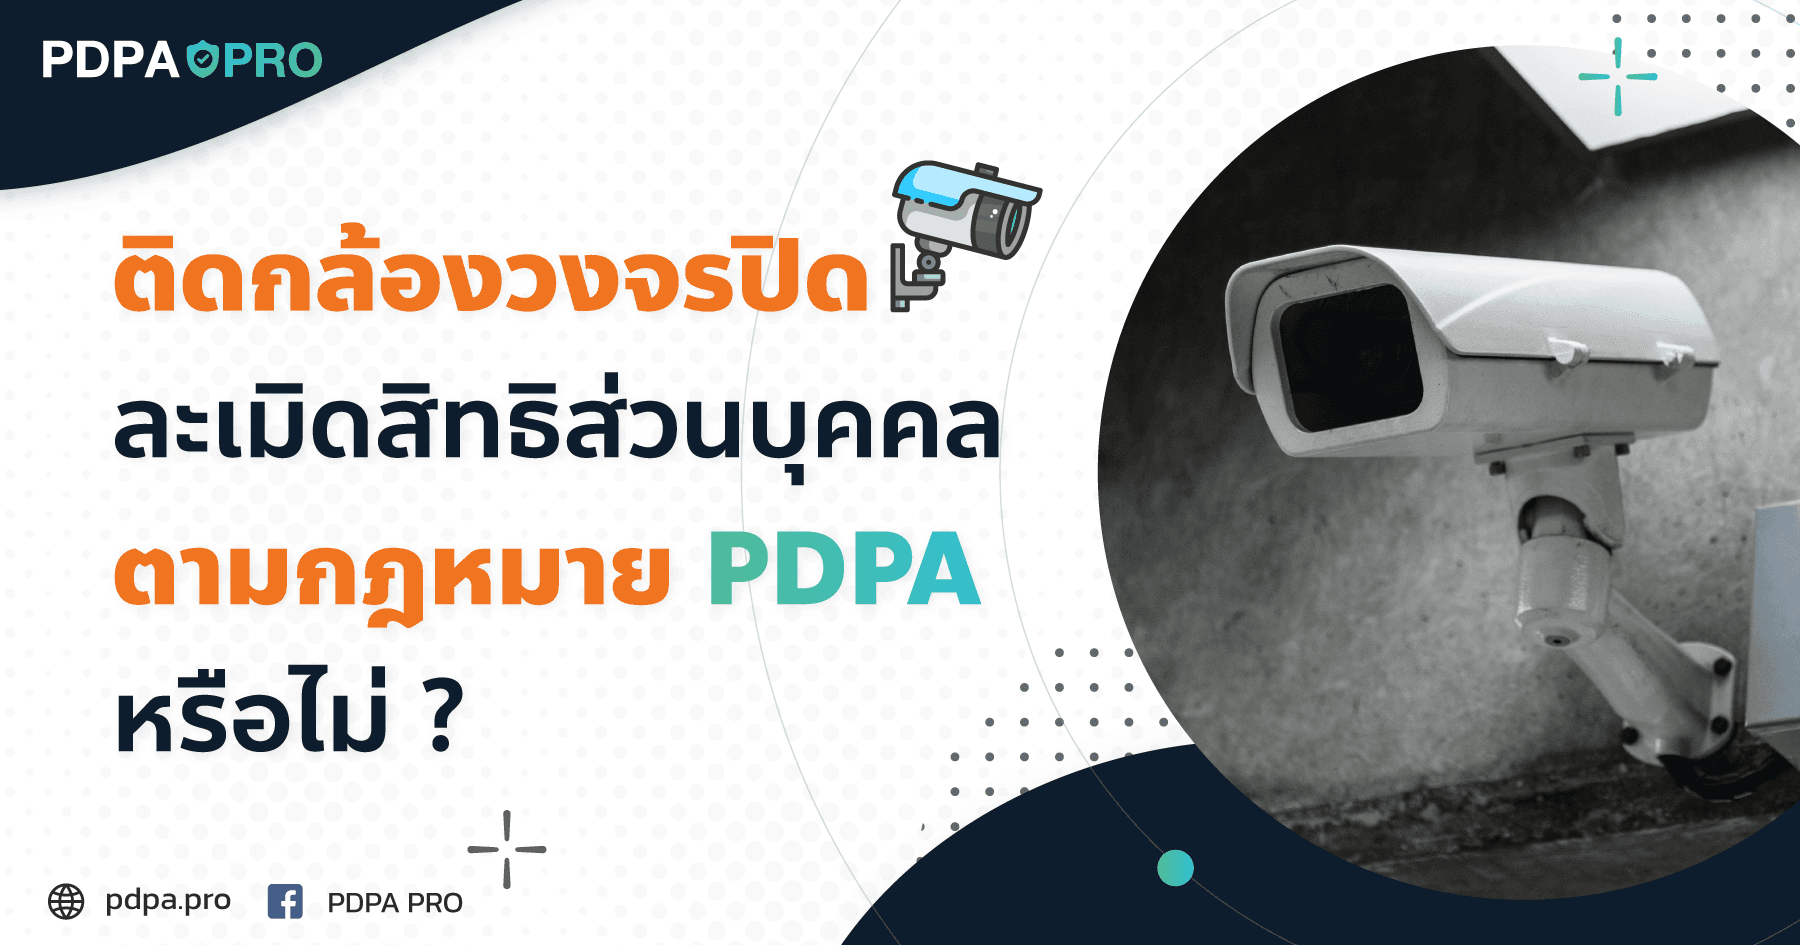 ติดกล้องวงจรปิดละเมิดสิทธิส่วนบุคคลตามกฎหมาย PDPA หรือไม่ ?